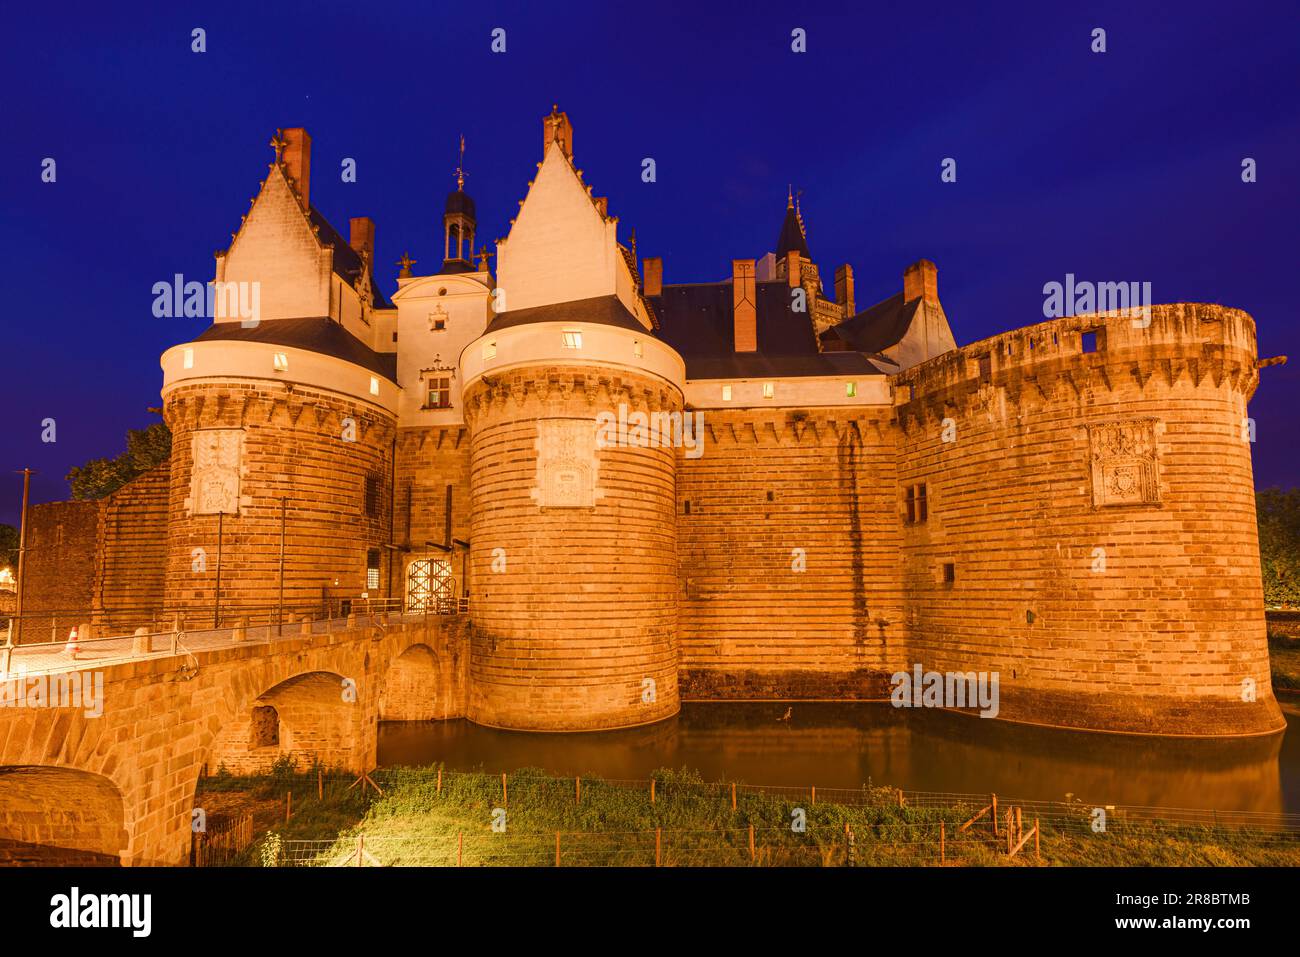 Vue de nuit du château des Ducs de Bretagne à Nantes, France Banque D'Images